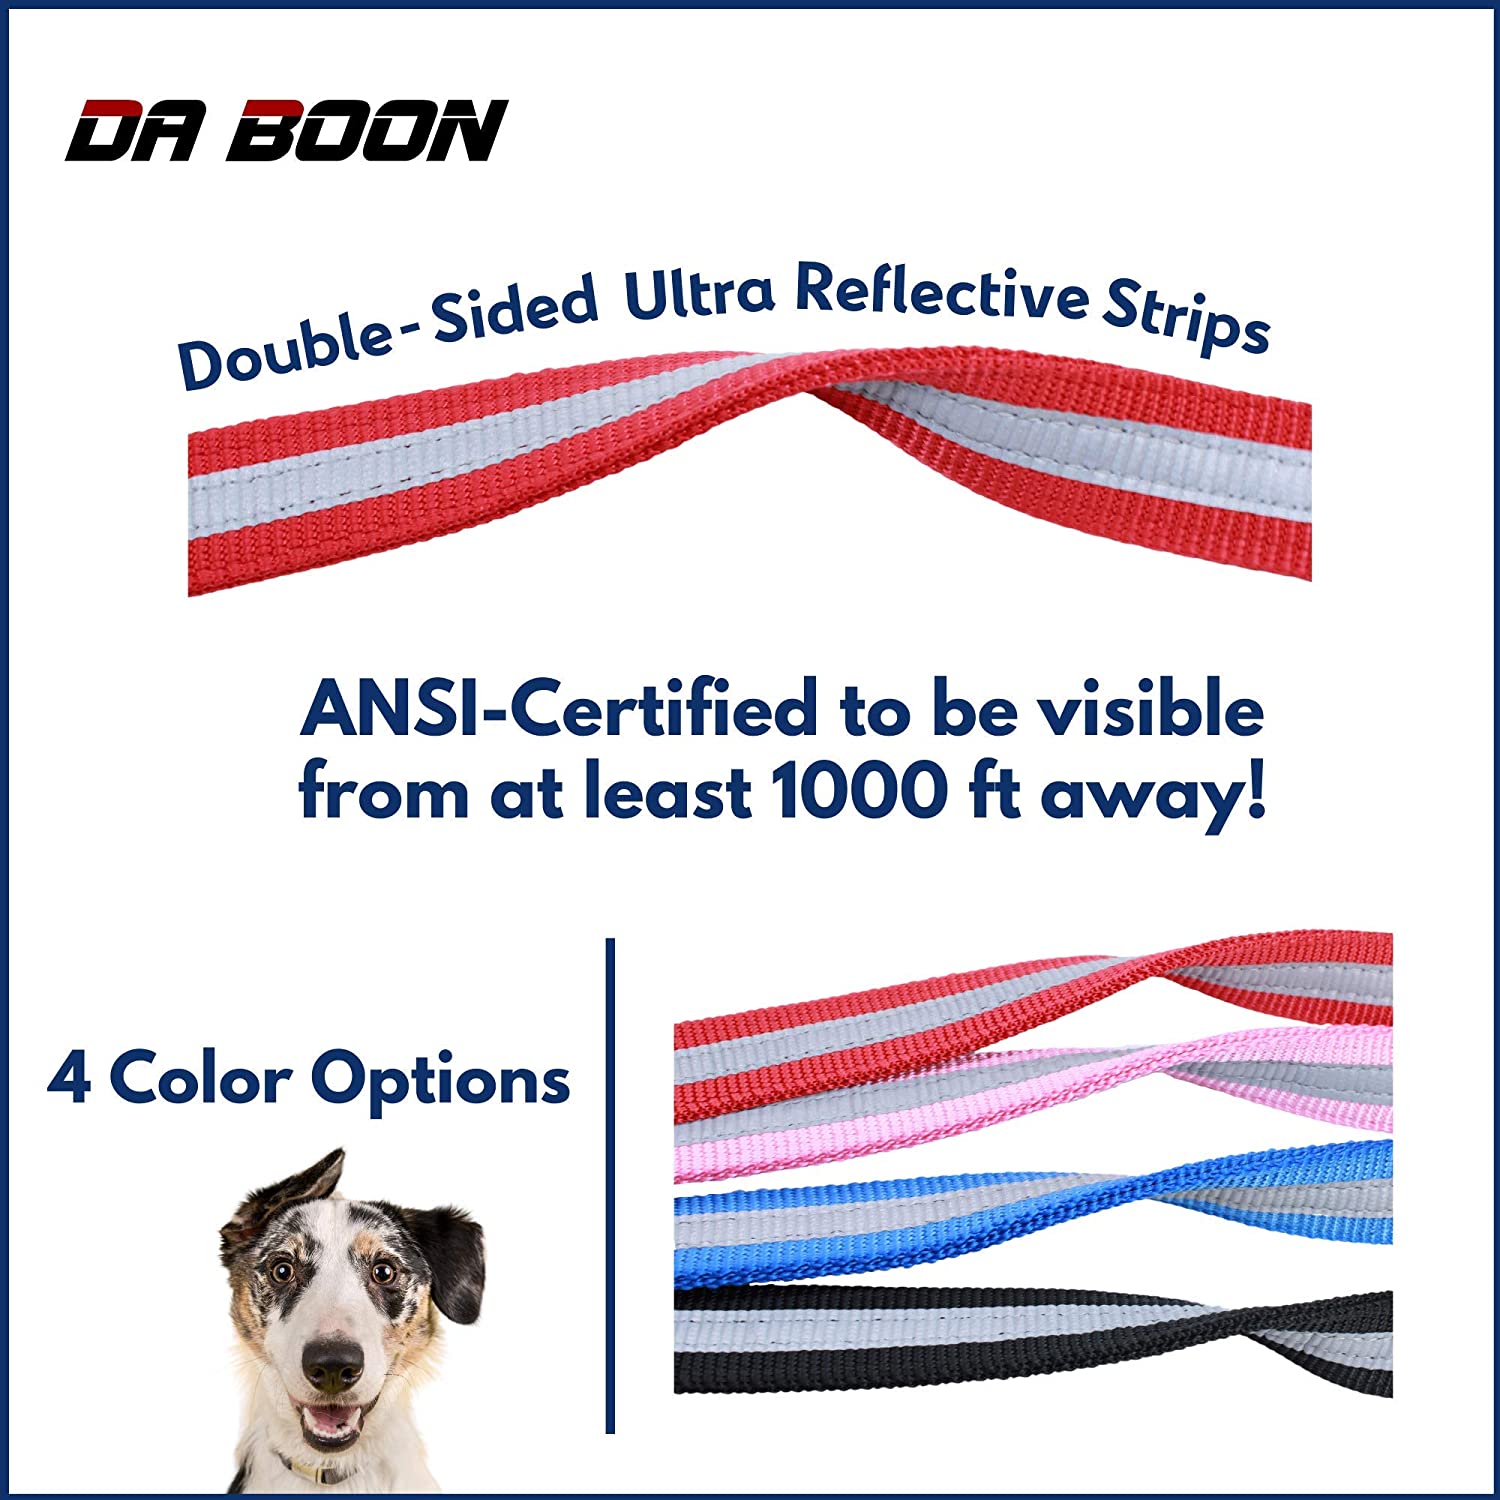 Da Boon Original Ultra Reflective Double-Sided Dog Leash